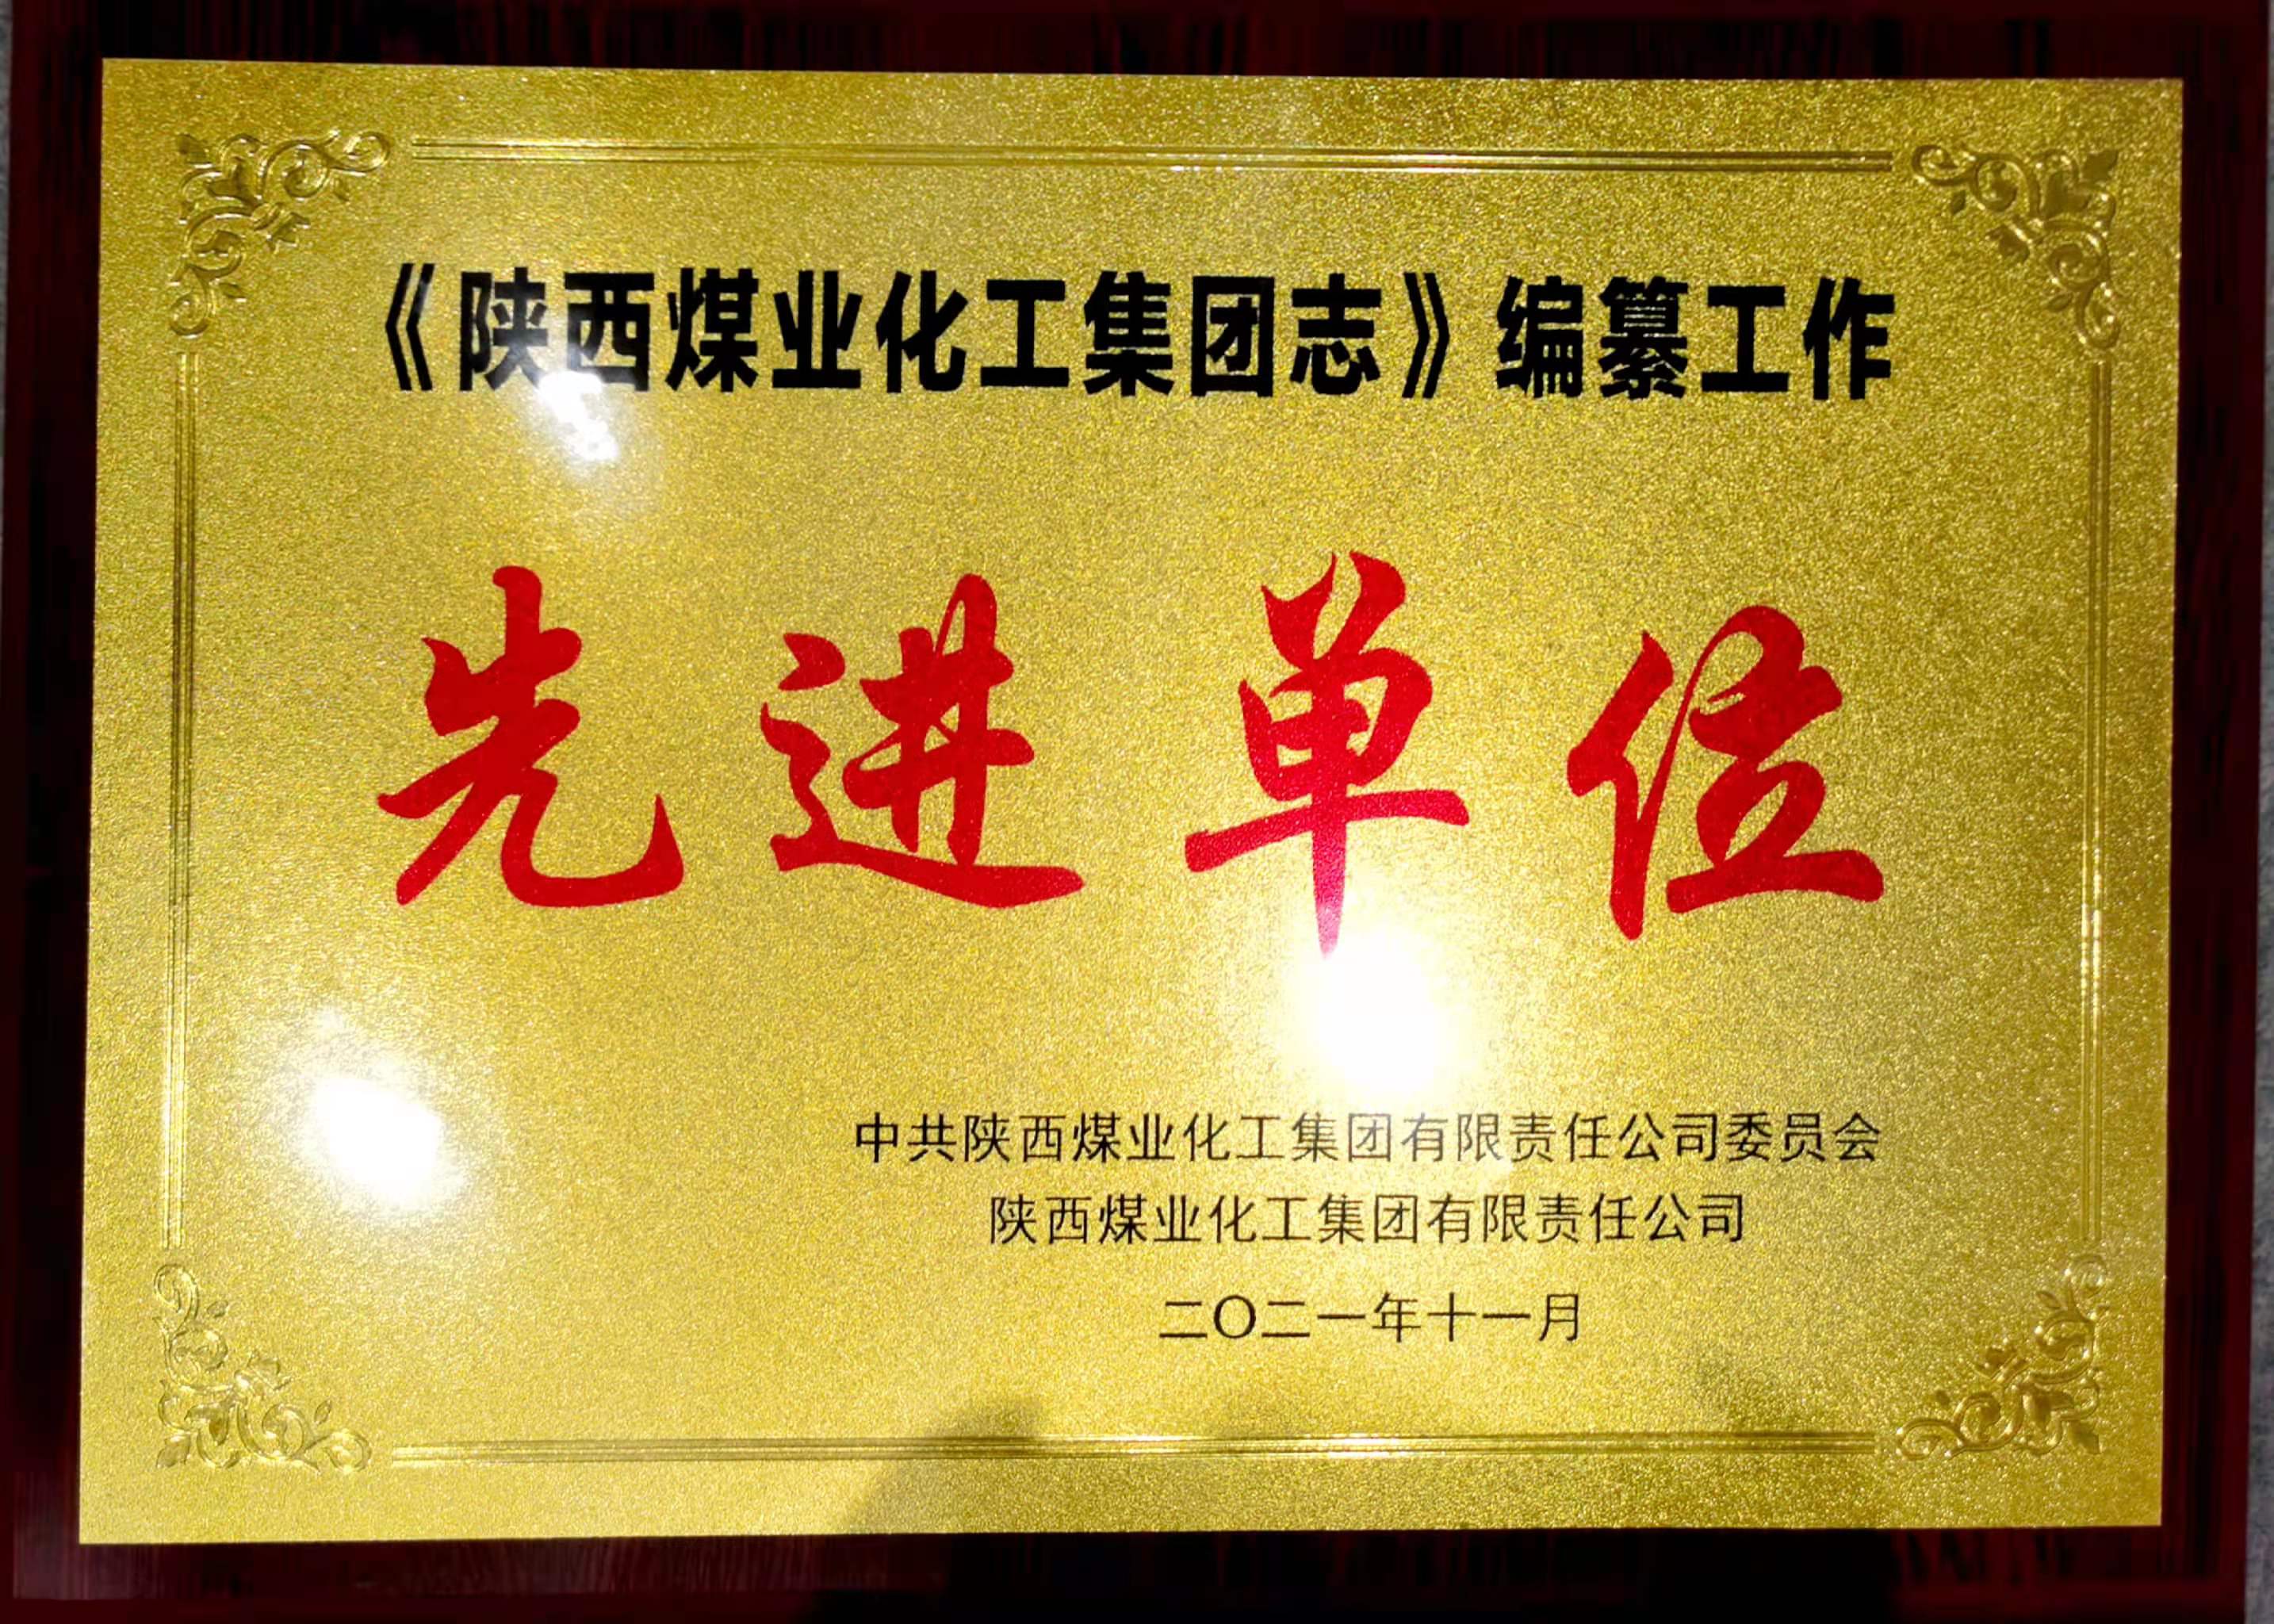 陕钢集团获评《陕西煤业化工集团志》编纂工作先进单位